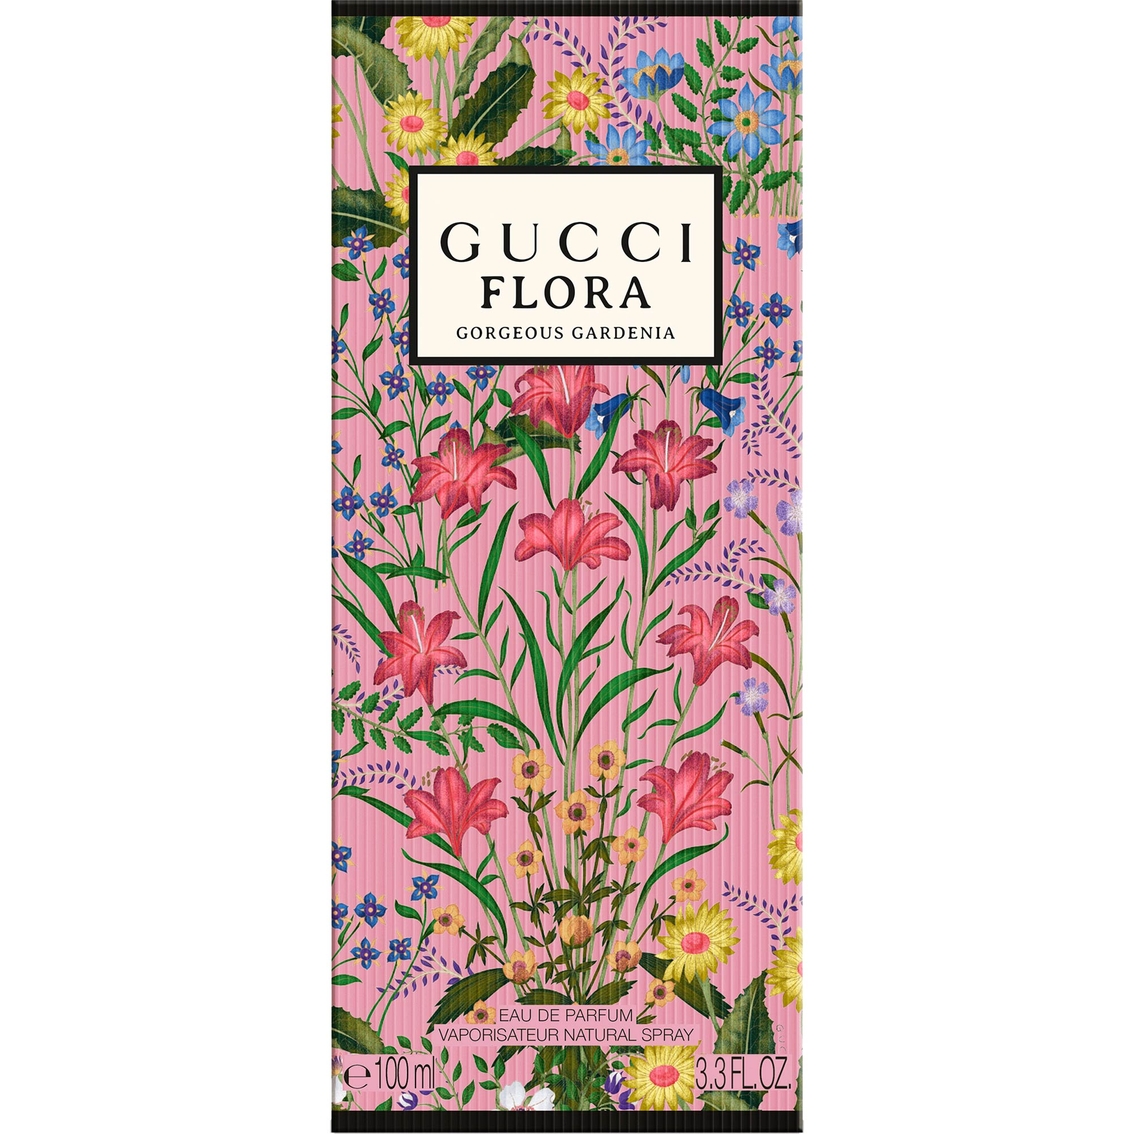 Gucci Flora Gorgeous Gardenia Eau de Parfum - Image 3 of 3